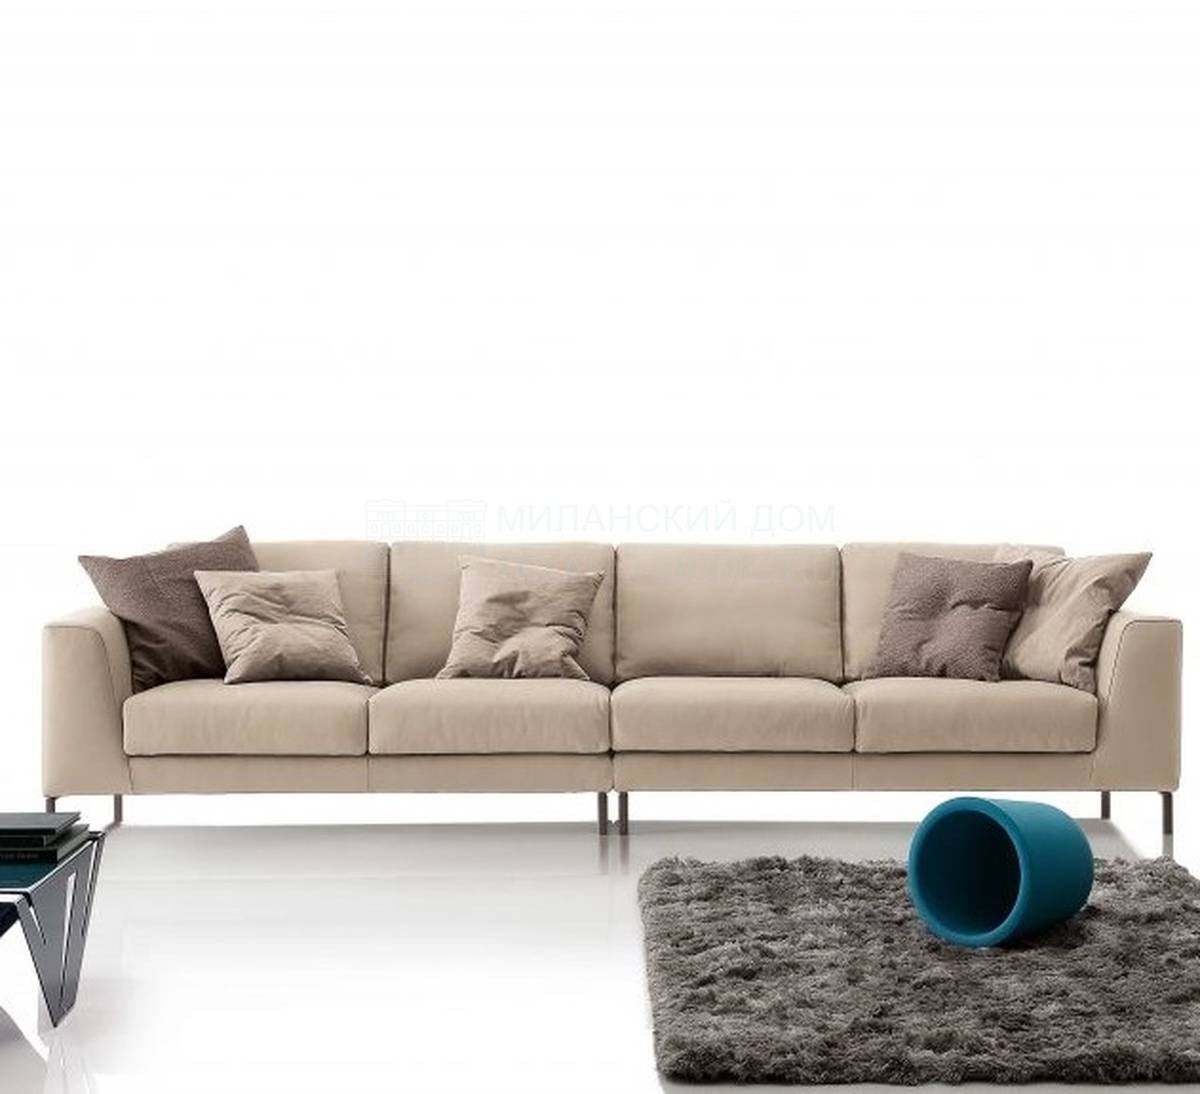 Модульный диван Artis из Италии фабрики DITRE ITALIA